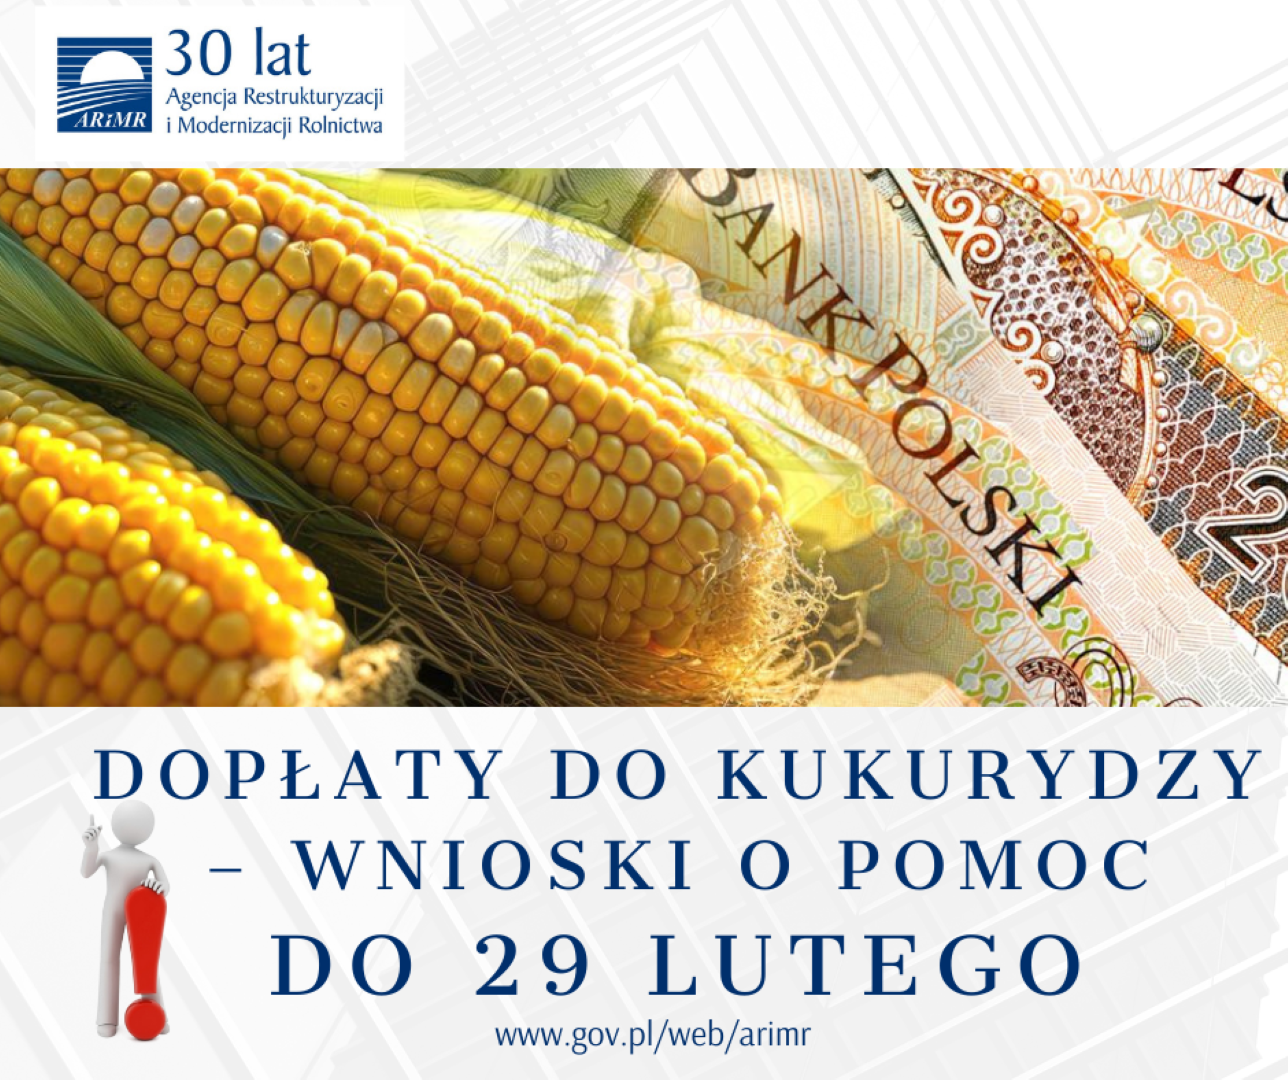 Dopłaty do kukurydzy – informacja dla producentów kukurydzy